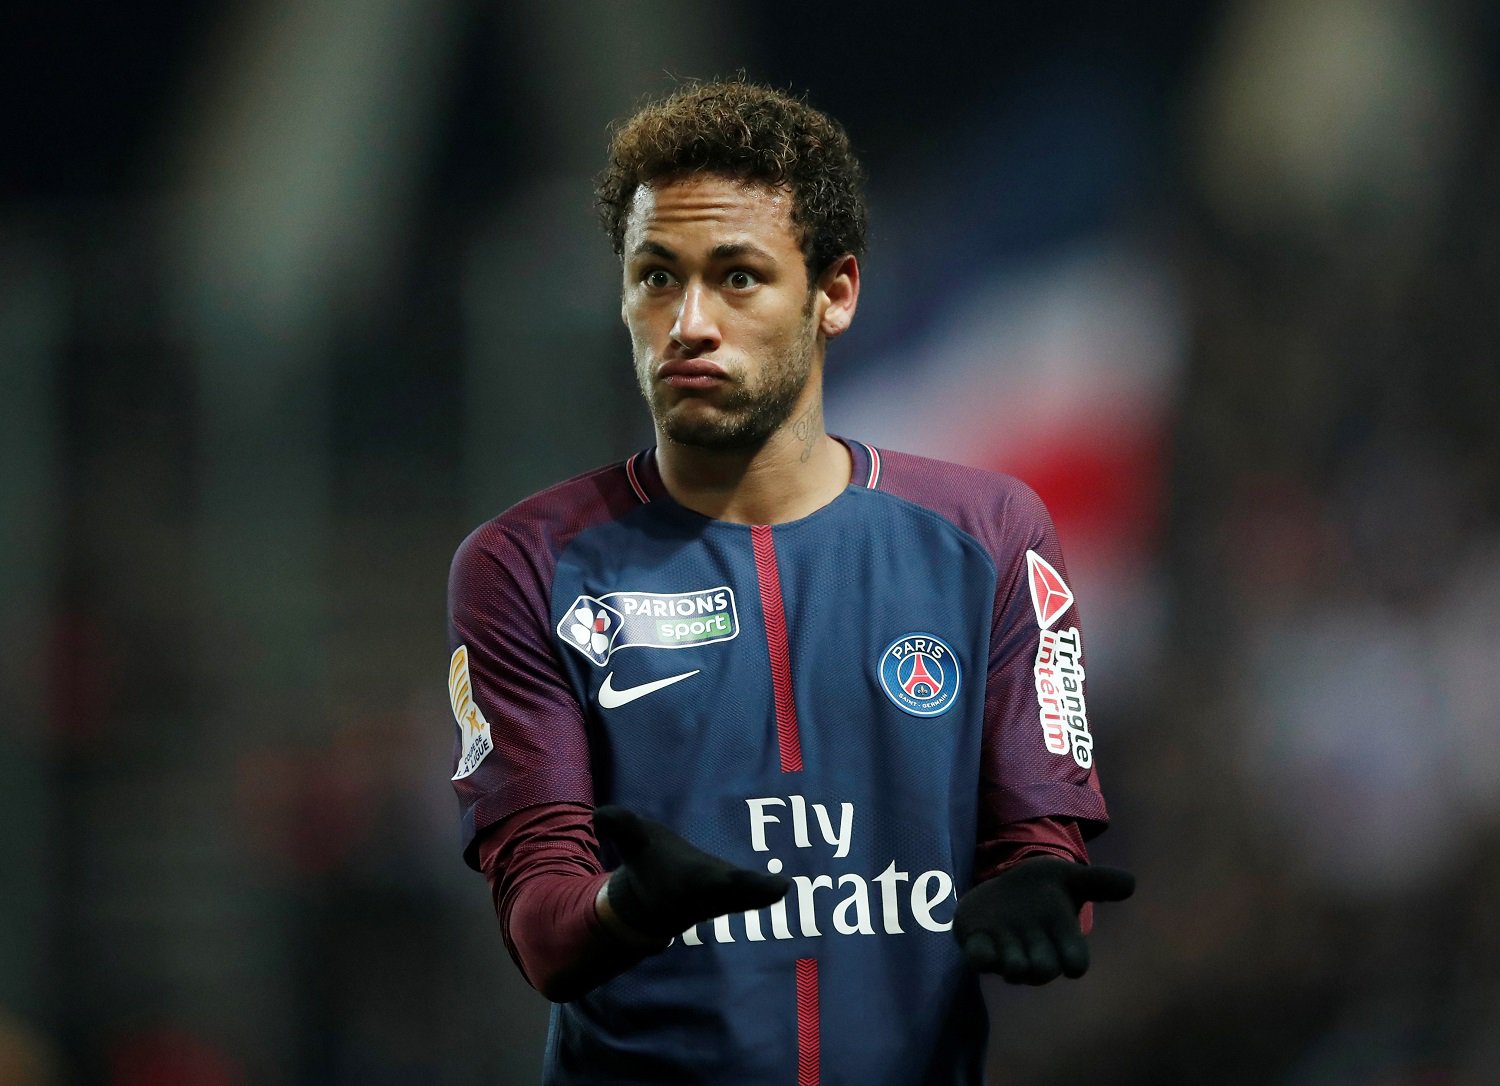 Golpearon la mesa: PSG exige el retorno inmediato de Neymar a París